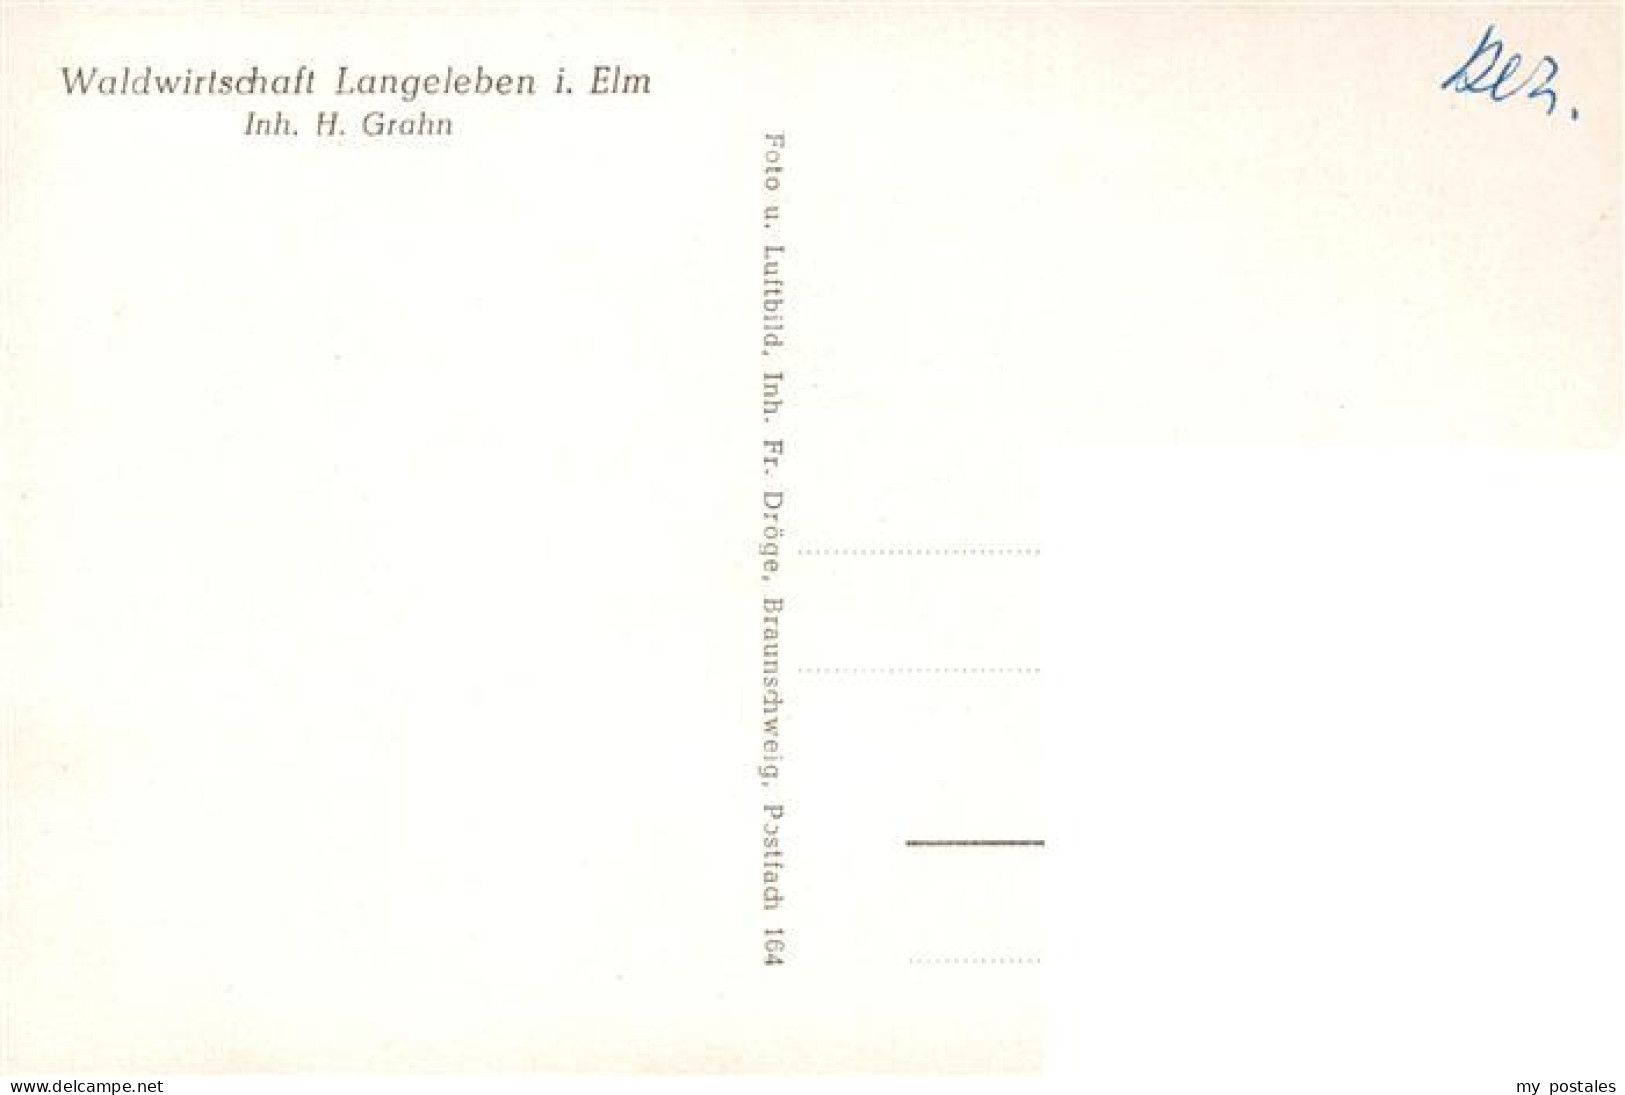 73900045 Langeleben Elm Waldwirtschaft Langeleben Elm - Königslutter